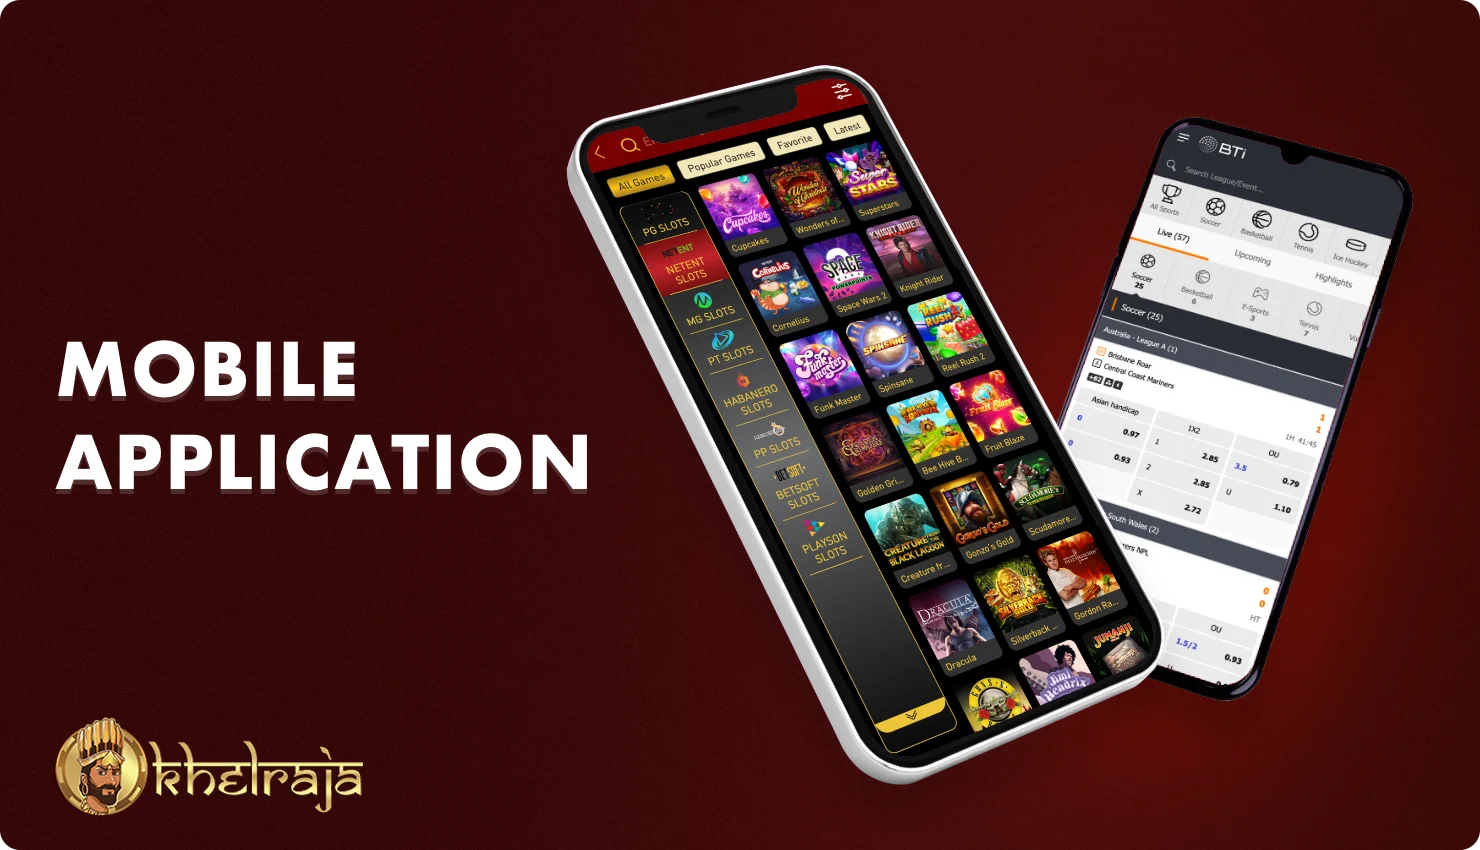 निःशुल्क Khelraja मोबाइल ऐप आपको सट्टा लगाने और चलते-फिरते कैसिनो गेम खेलने की अनुमति देता है